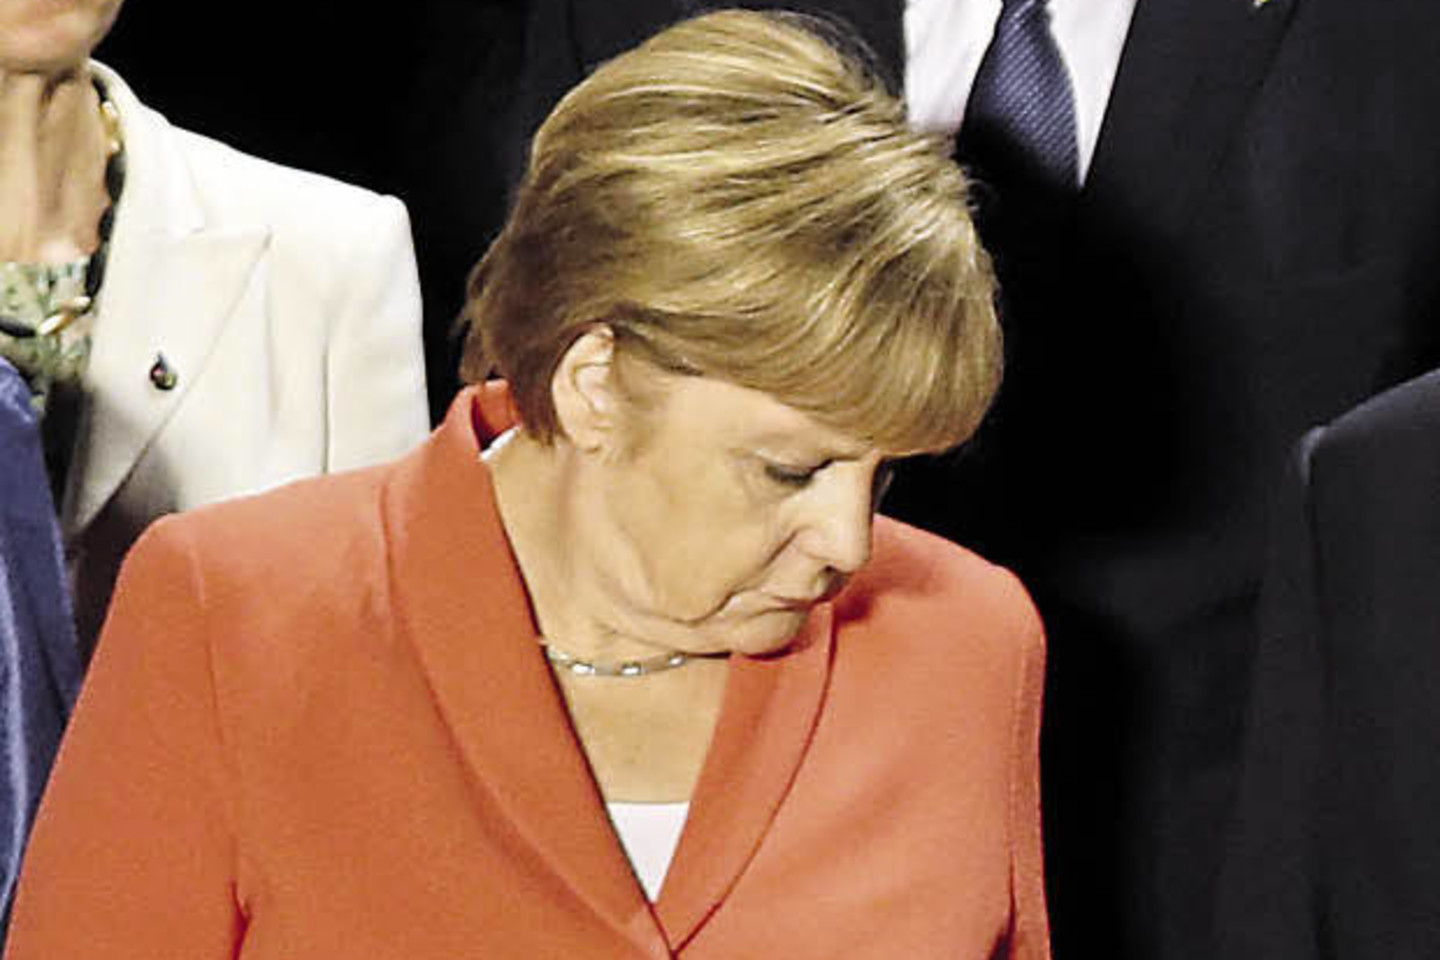 A.Merkel nešioja to paties modelio švarkus su trimis sagomis, bet skirtingų spalvų.